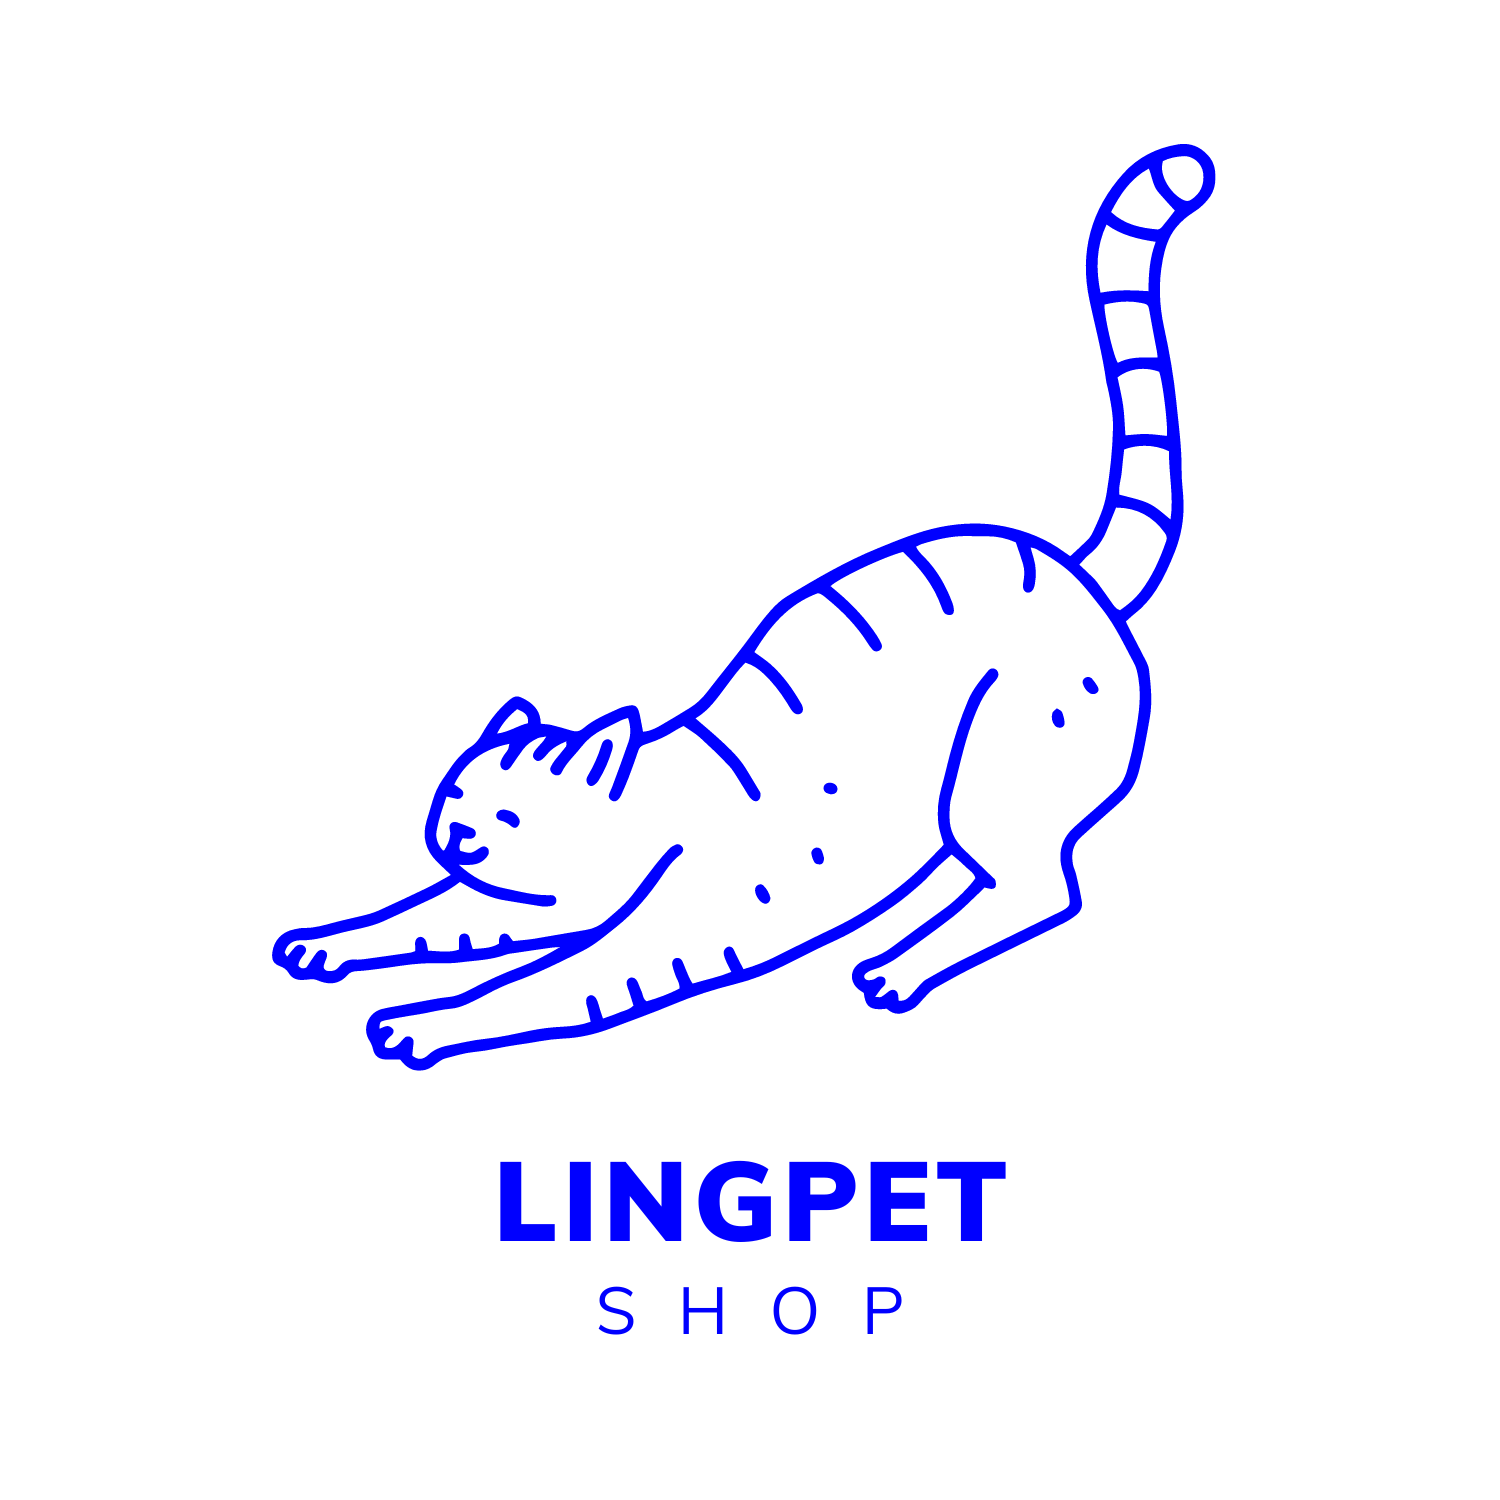 LingPet